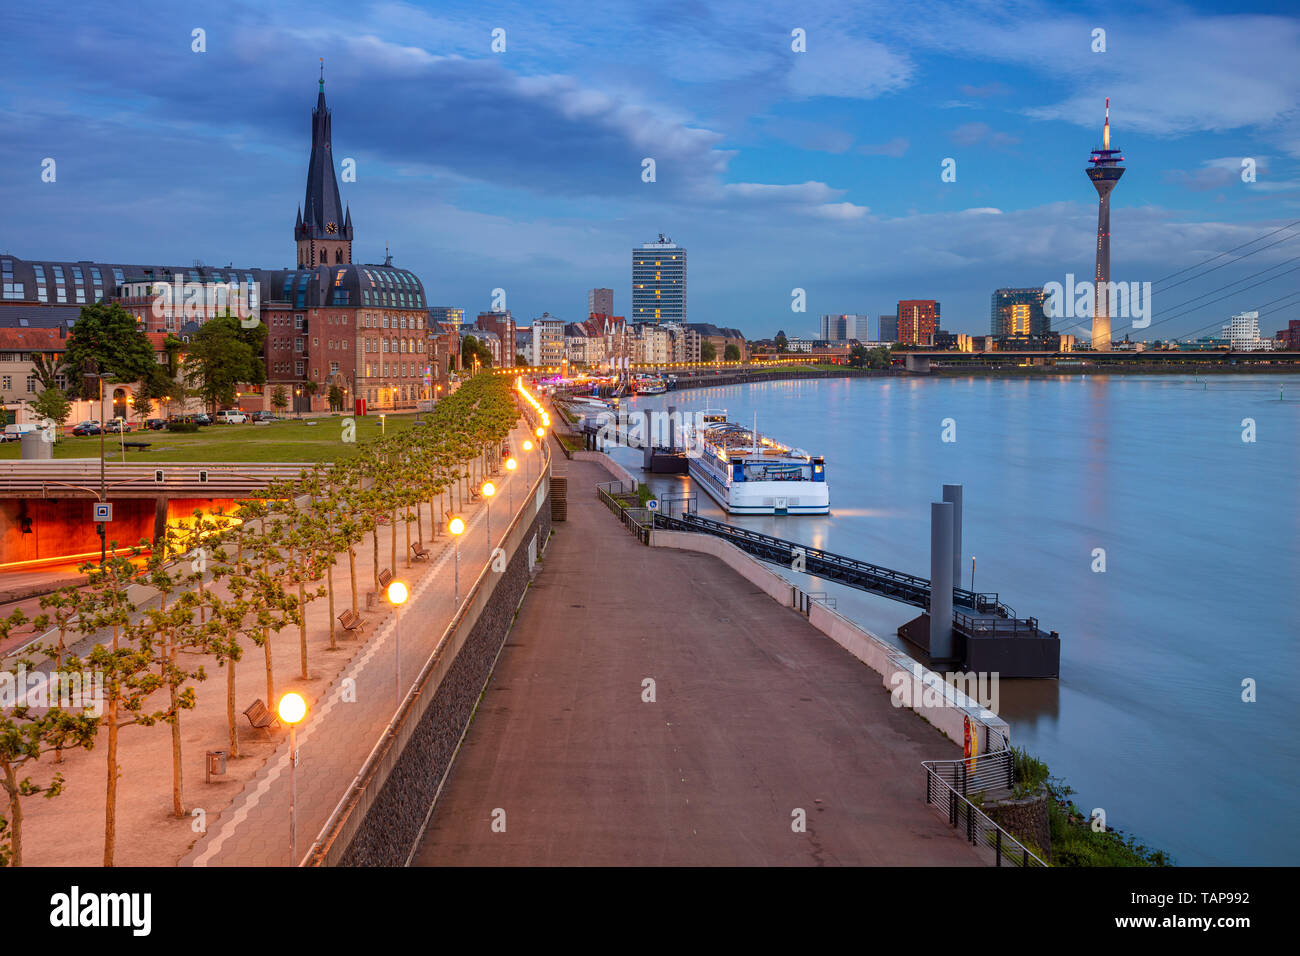 Düsseldorf, Allemagne. Image de paysage urbain du bord de la rivière Düsseldorf, Allemagne, avec le Rhin au coucher du soleil. Banque D'Images